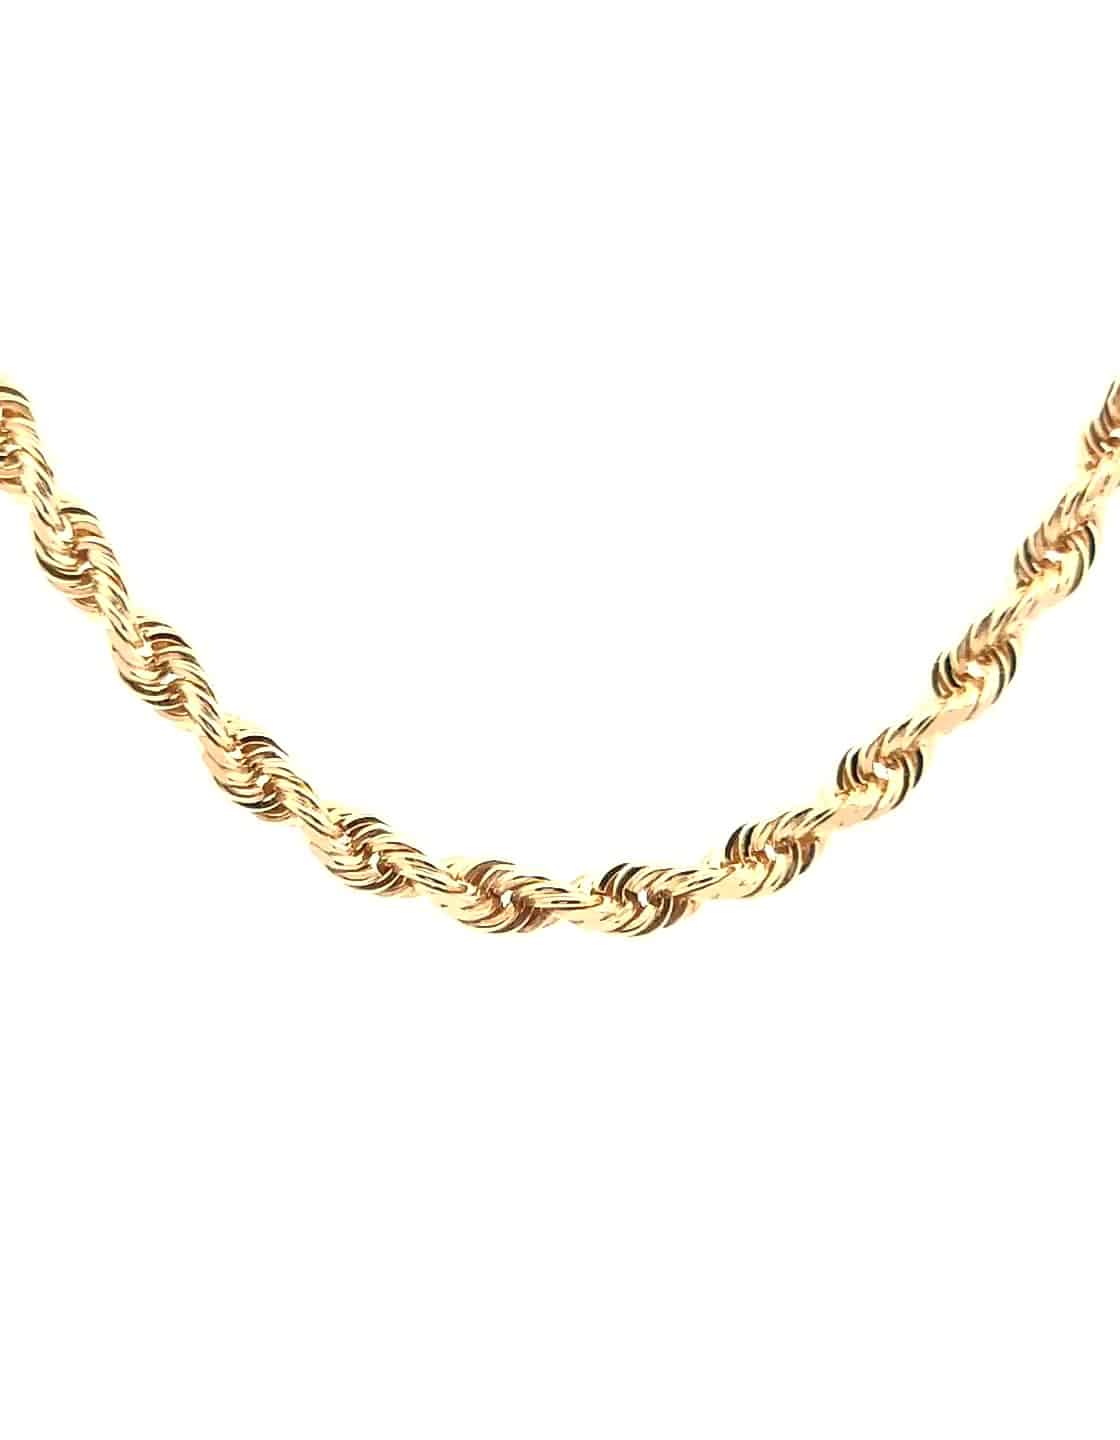 Men's Rope Chain in 14K Gold